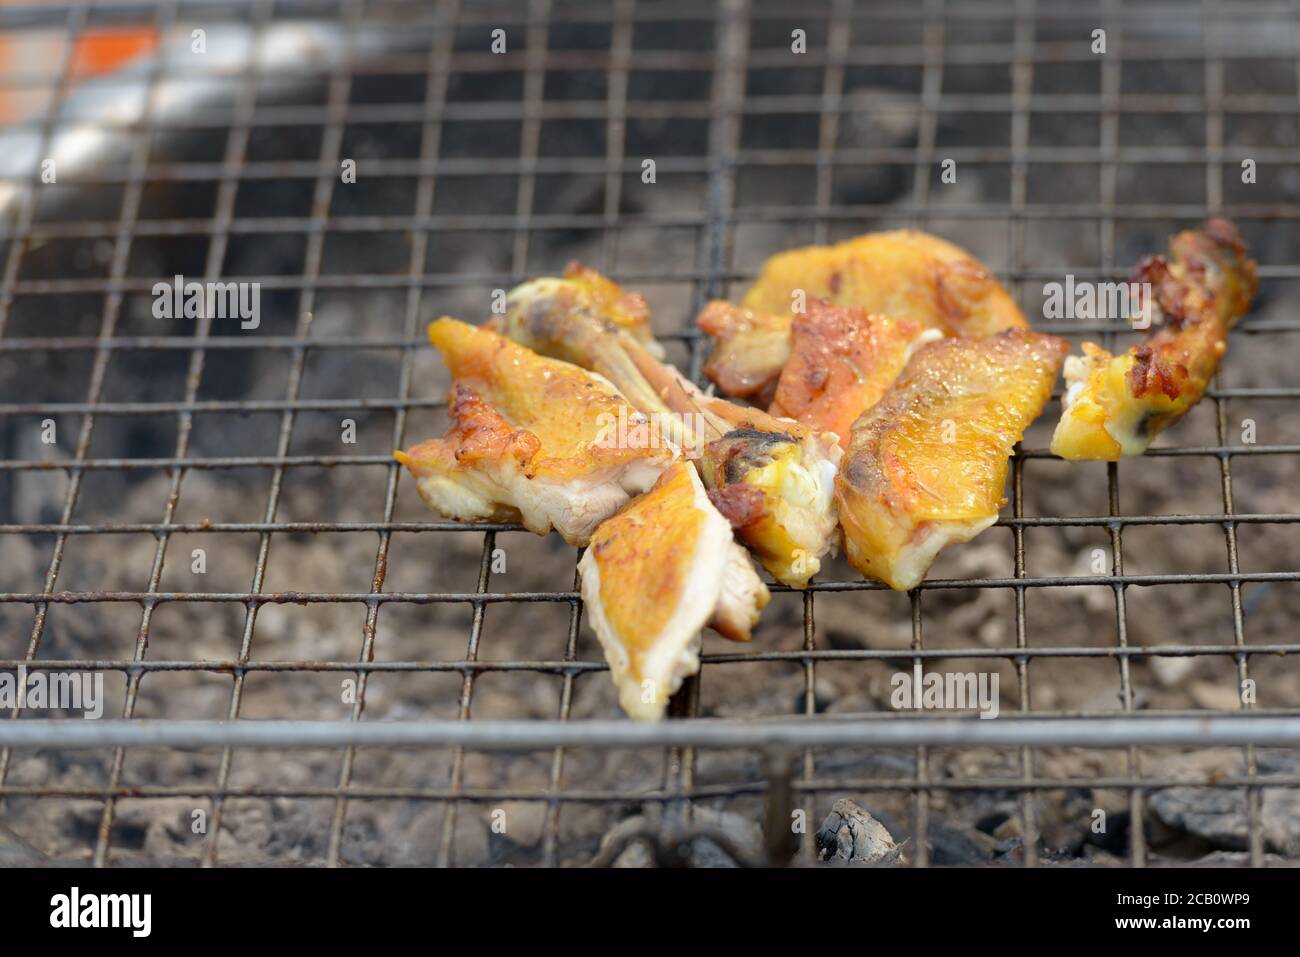 Portrait de poulet grillé fraîchement cuit à l'extérieur Banque D'Images